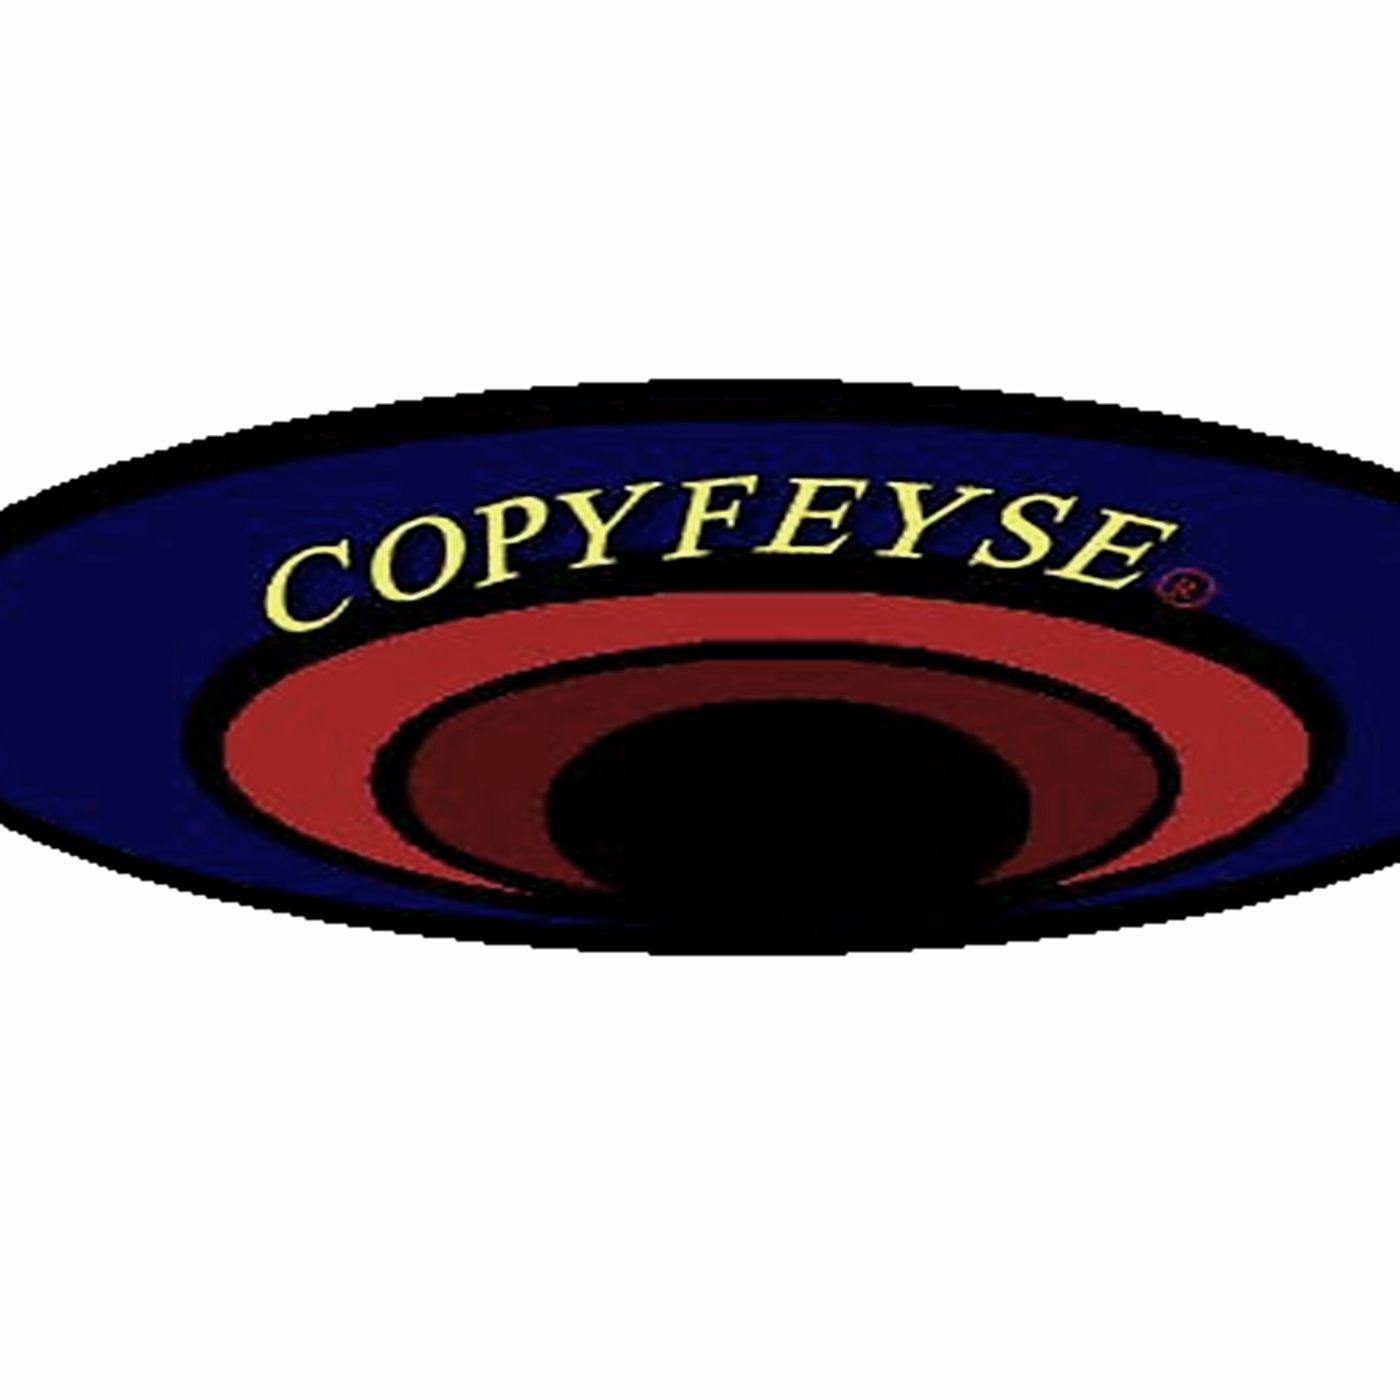 copyfeyse